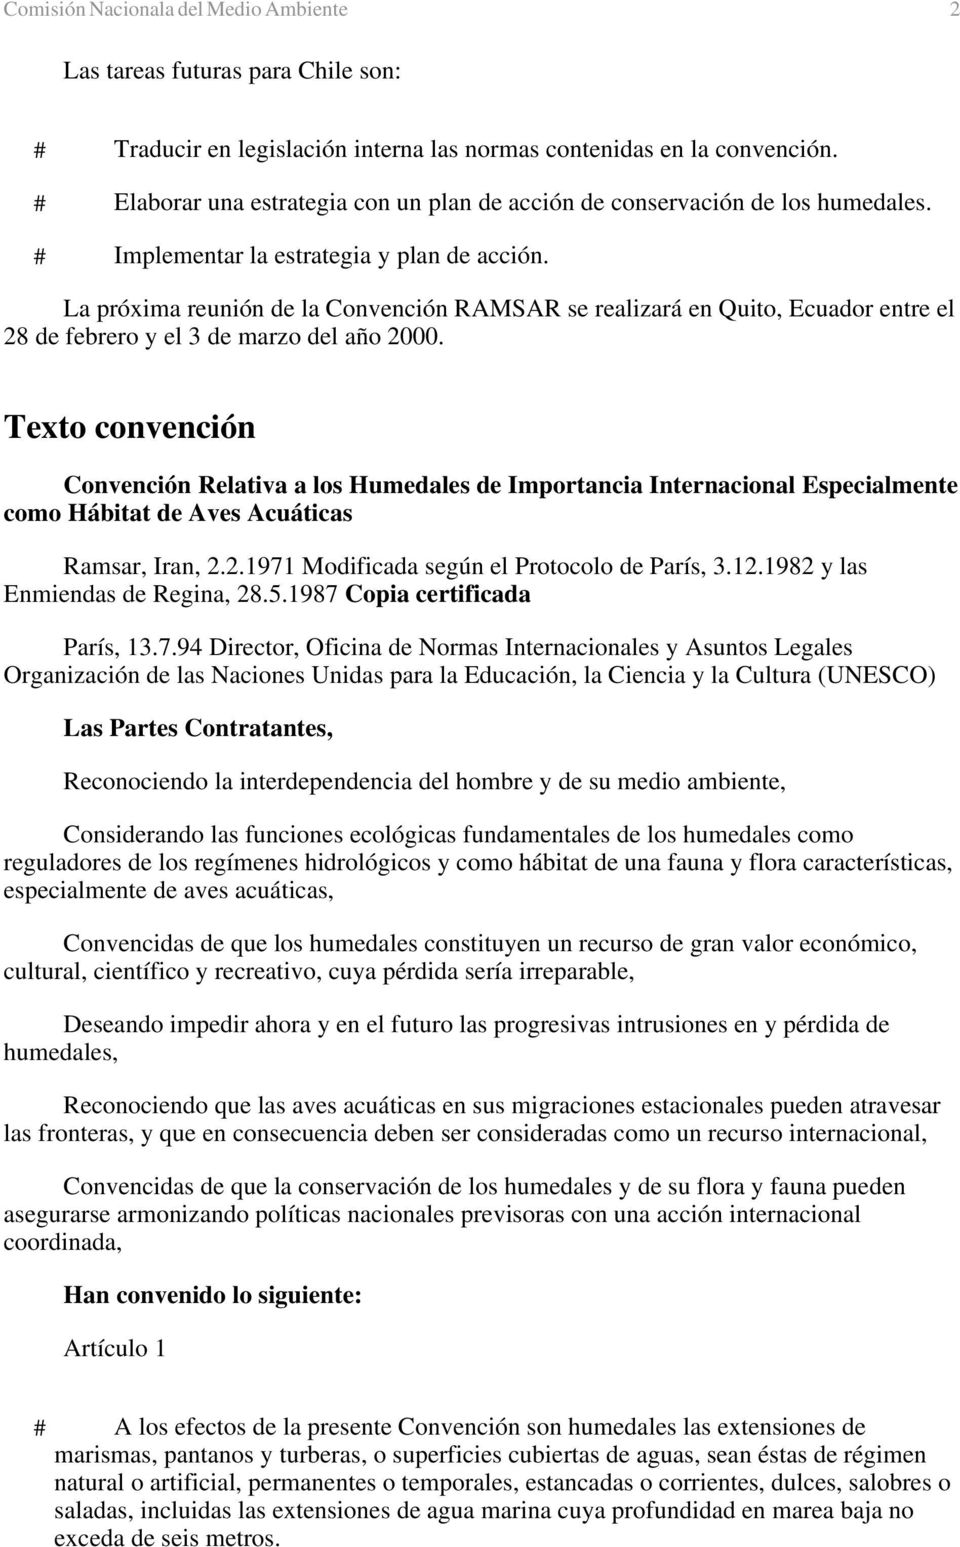 La próxima reunión de la Convención RAMSAR se realizará en Quito, Ecuador entre el 28 de febrero y el 3 de marzo del año 2000.